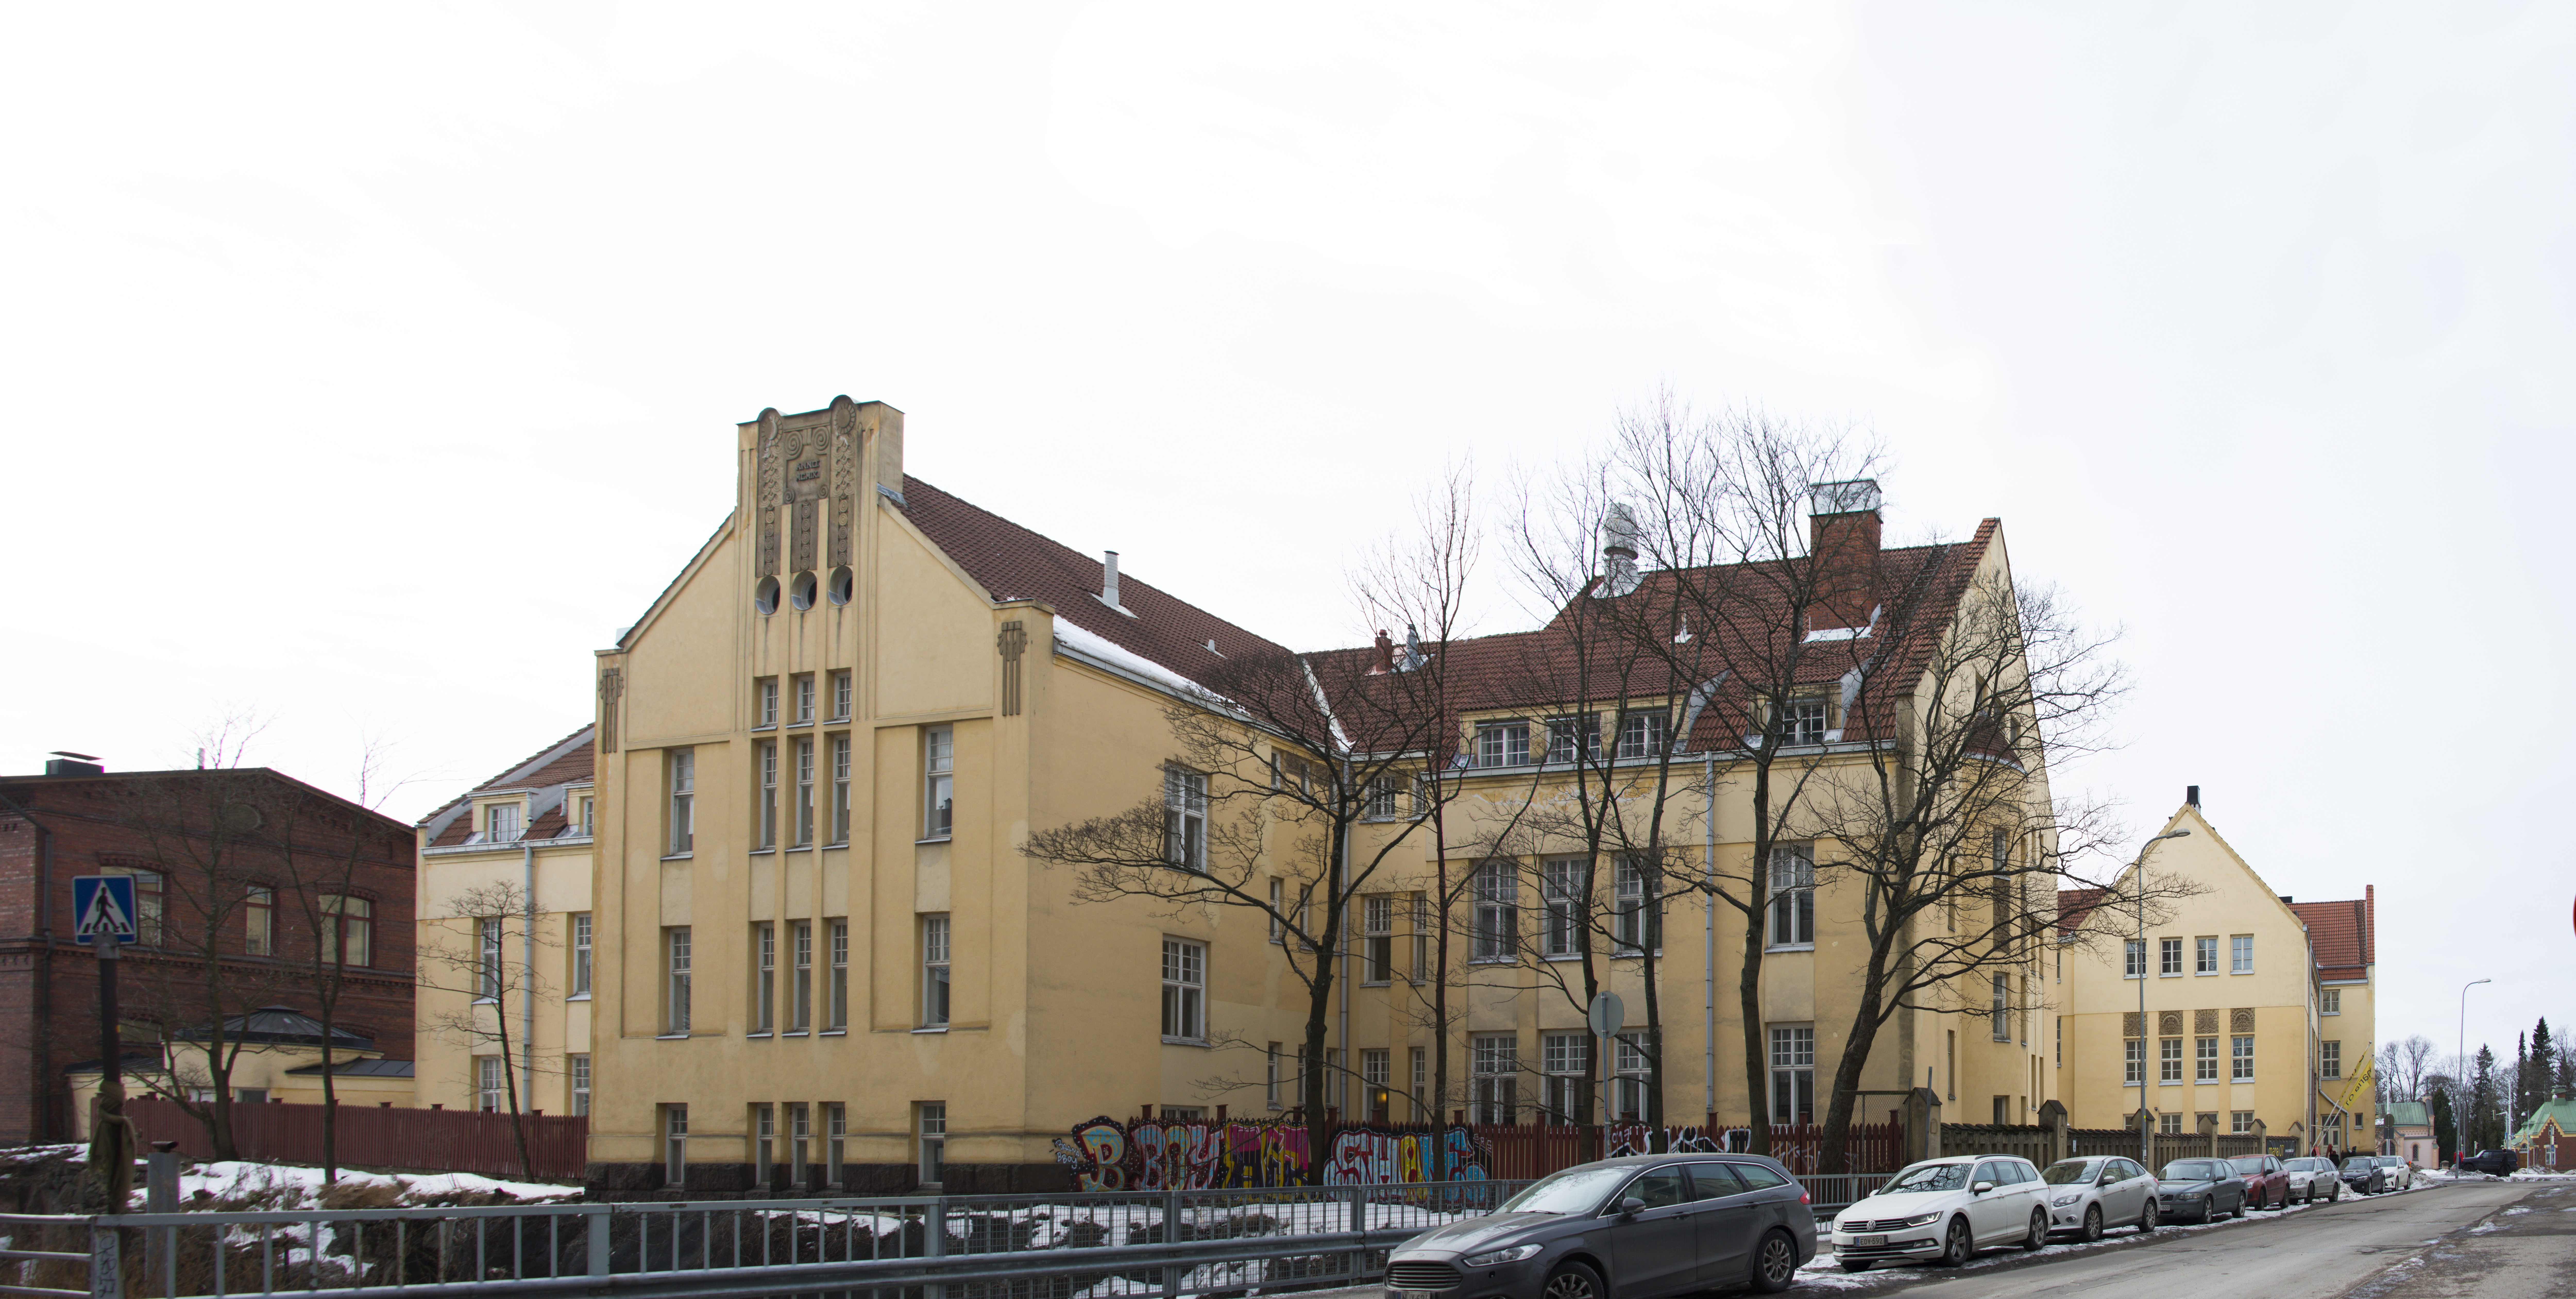 Entinen Marian Sairaala. Arkkitehti Lars Sonck. Rakennusvuosi 1907. Nykyään tiloissa toimii Campus Maria - Helsingin kasvuyrityskeskus.